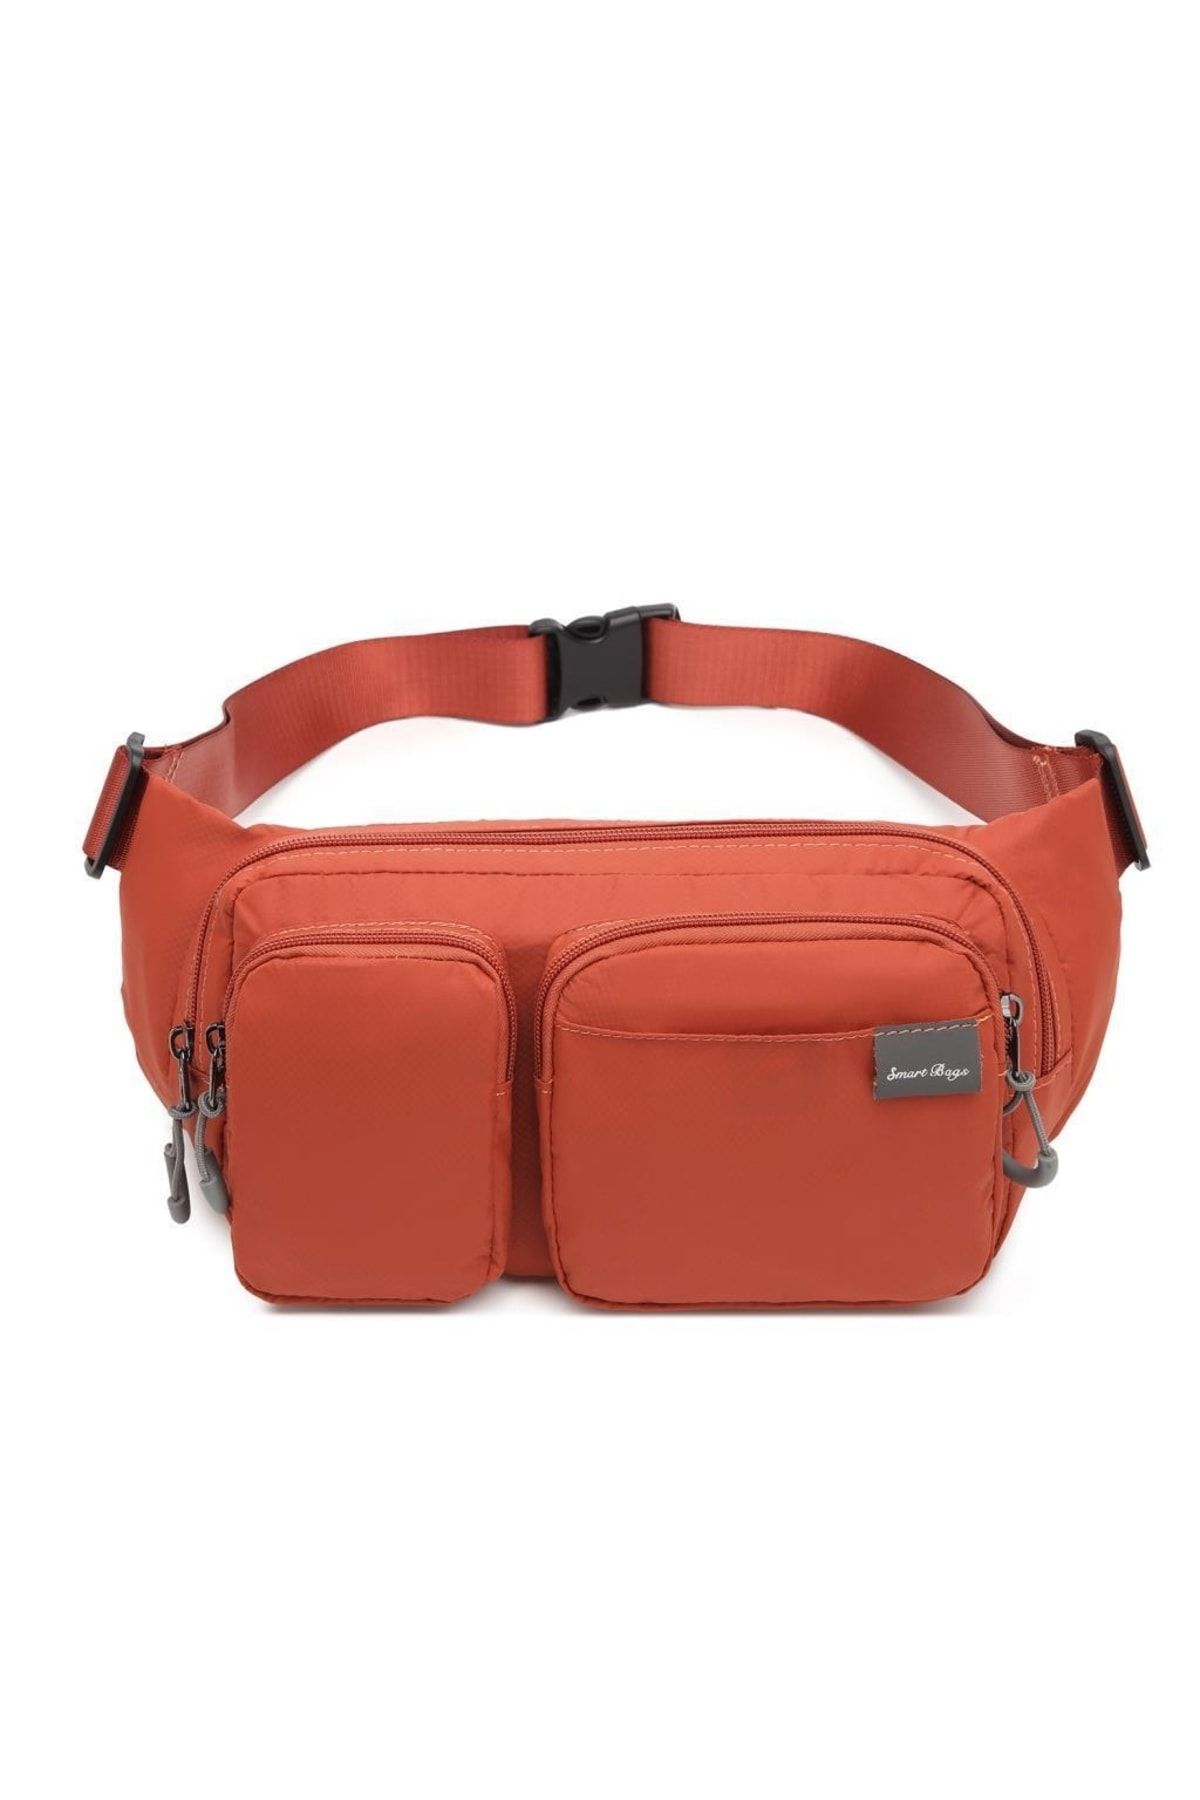 Smart Bags Ekstra Hafif Kumaş Uniseks Bodybag Bel Çantası 3150